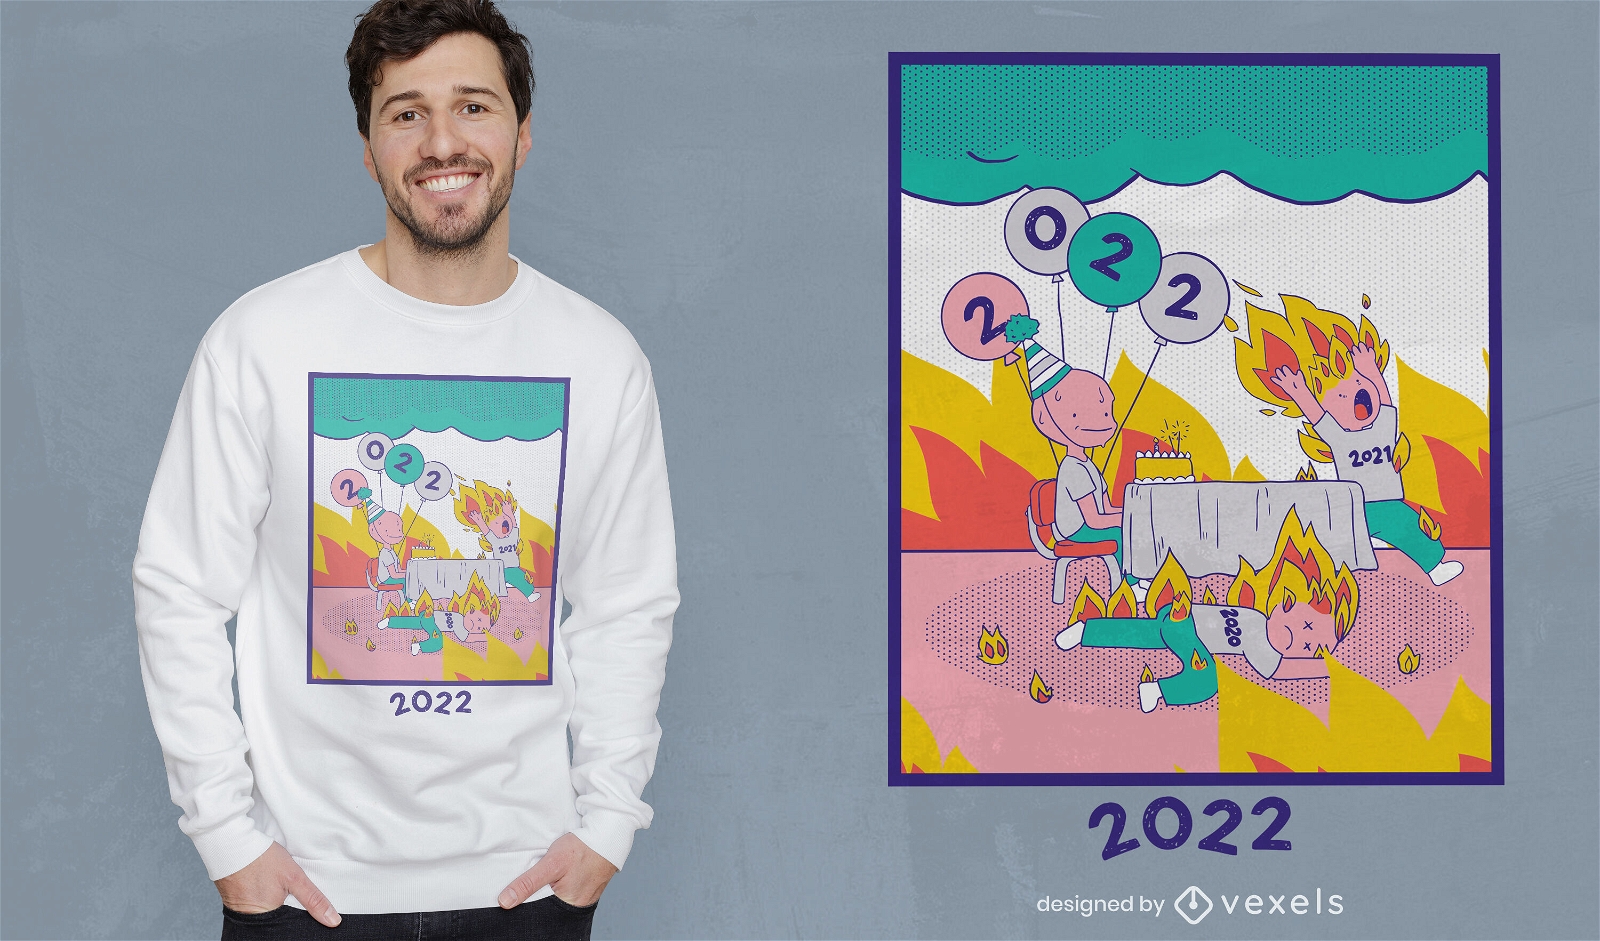 Divertido diseño de camiseta de año nuevo 2022.